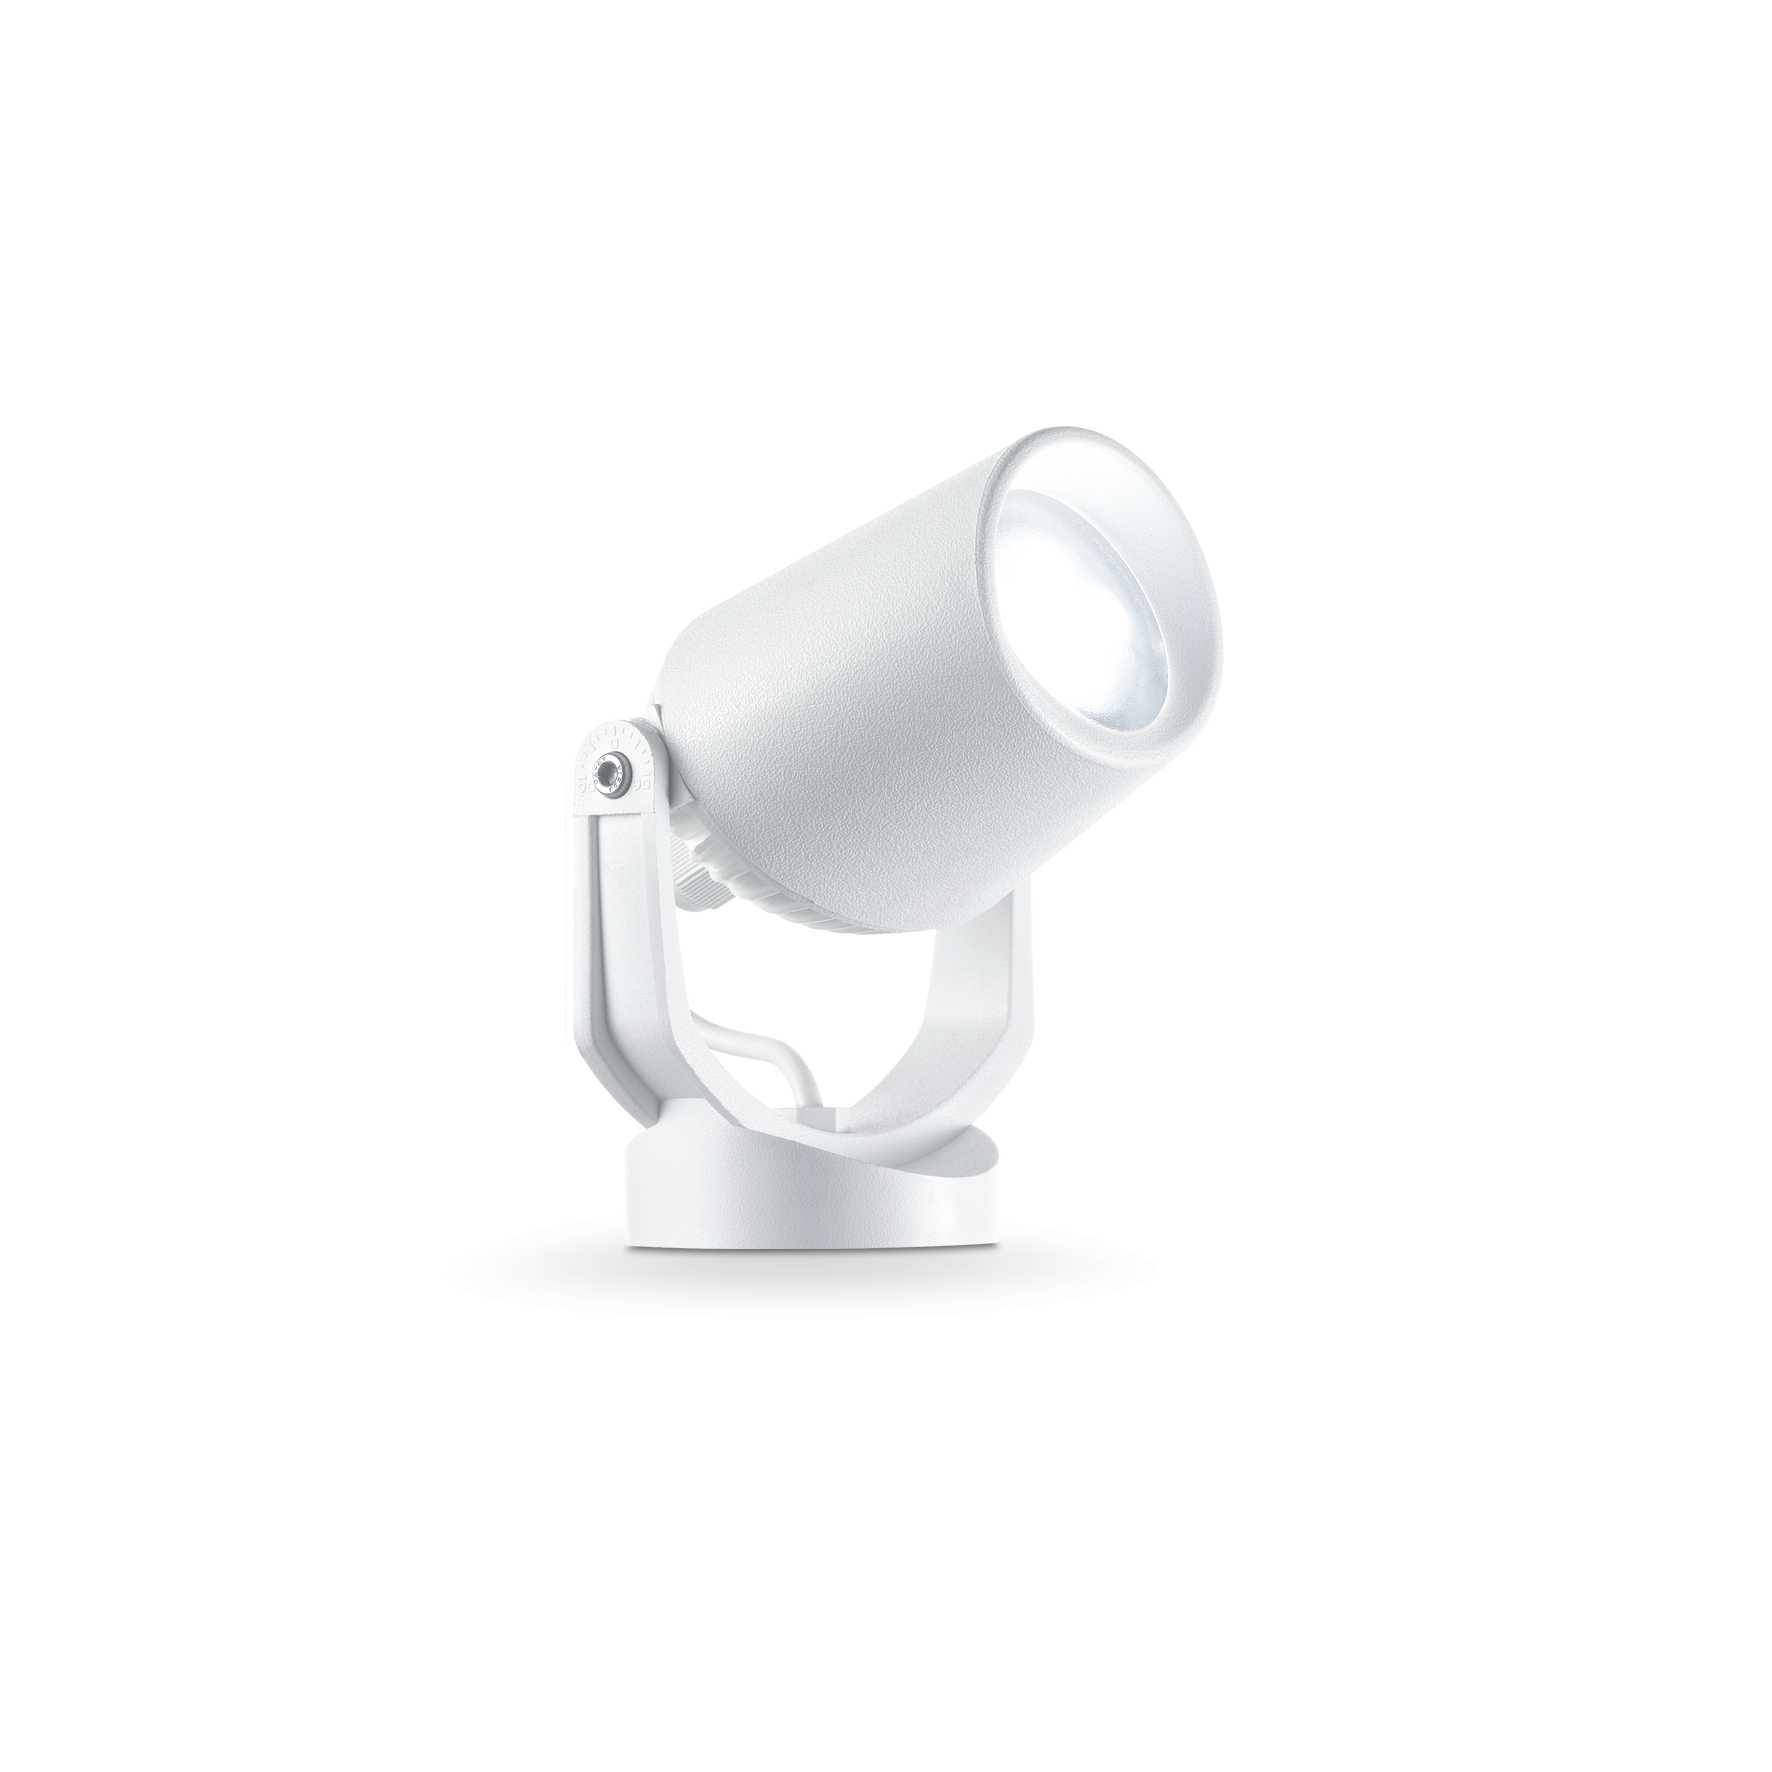 AD hotelska oprema Reflektori vanjski Elio pr1- Bijele boje slika proizvoda